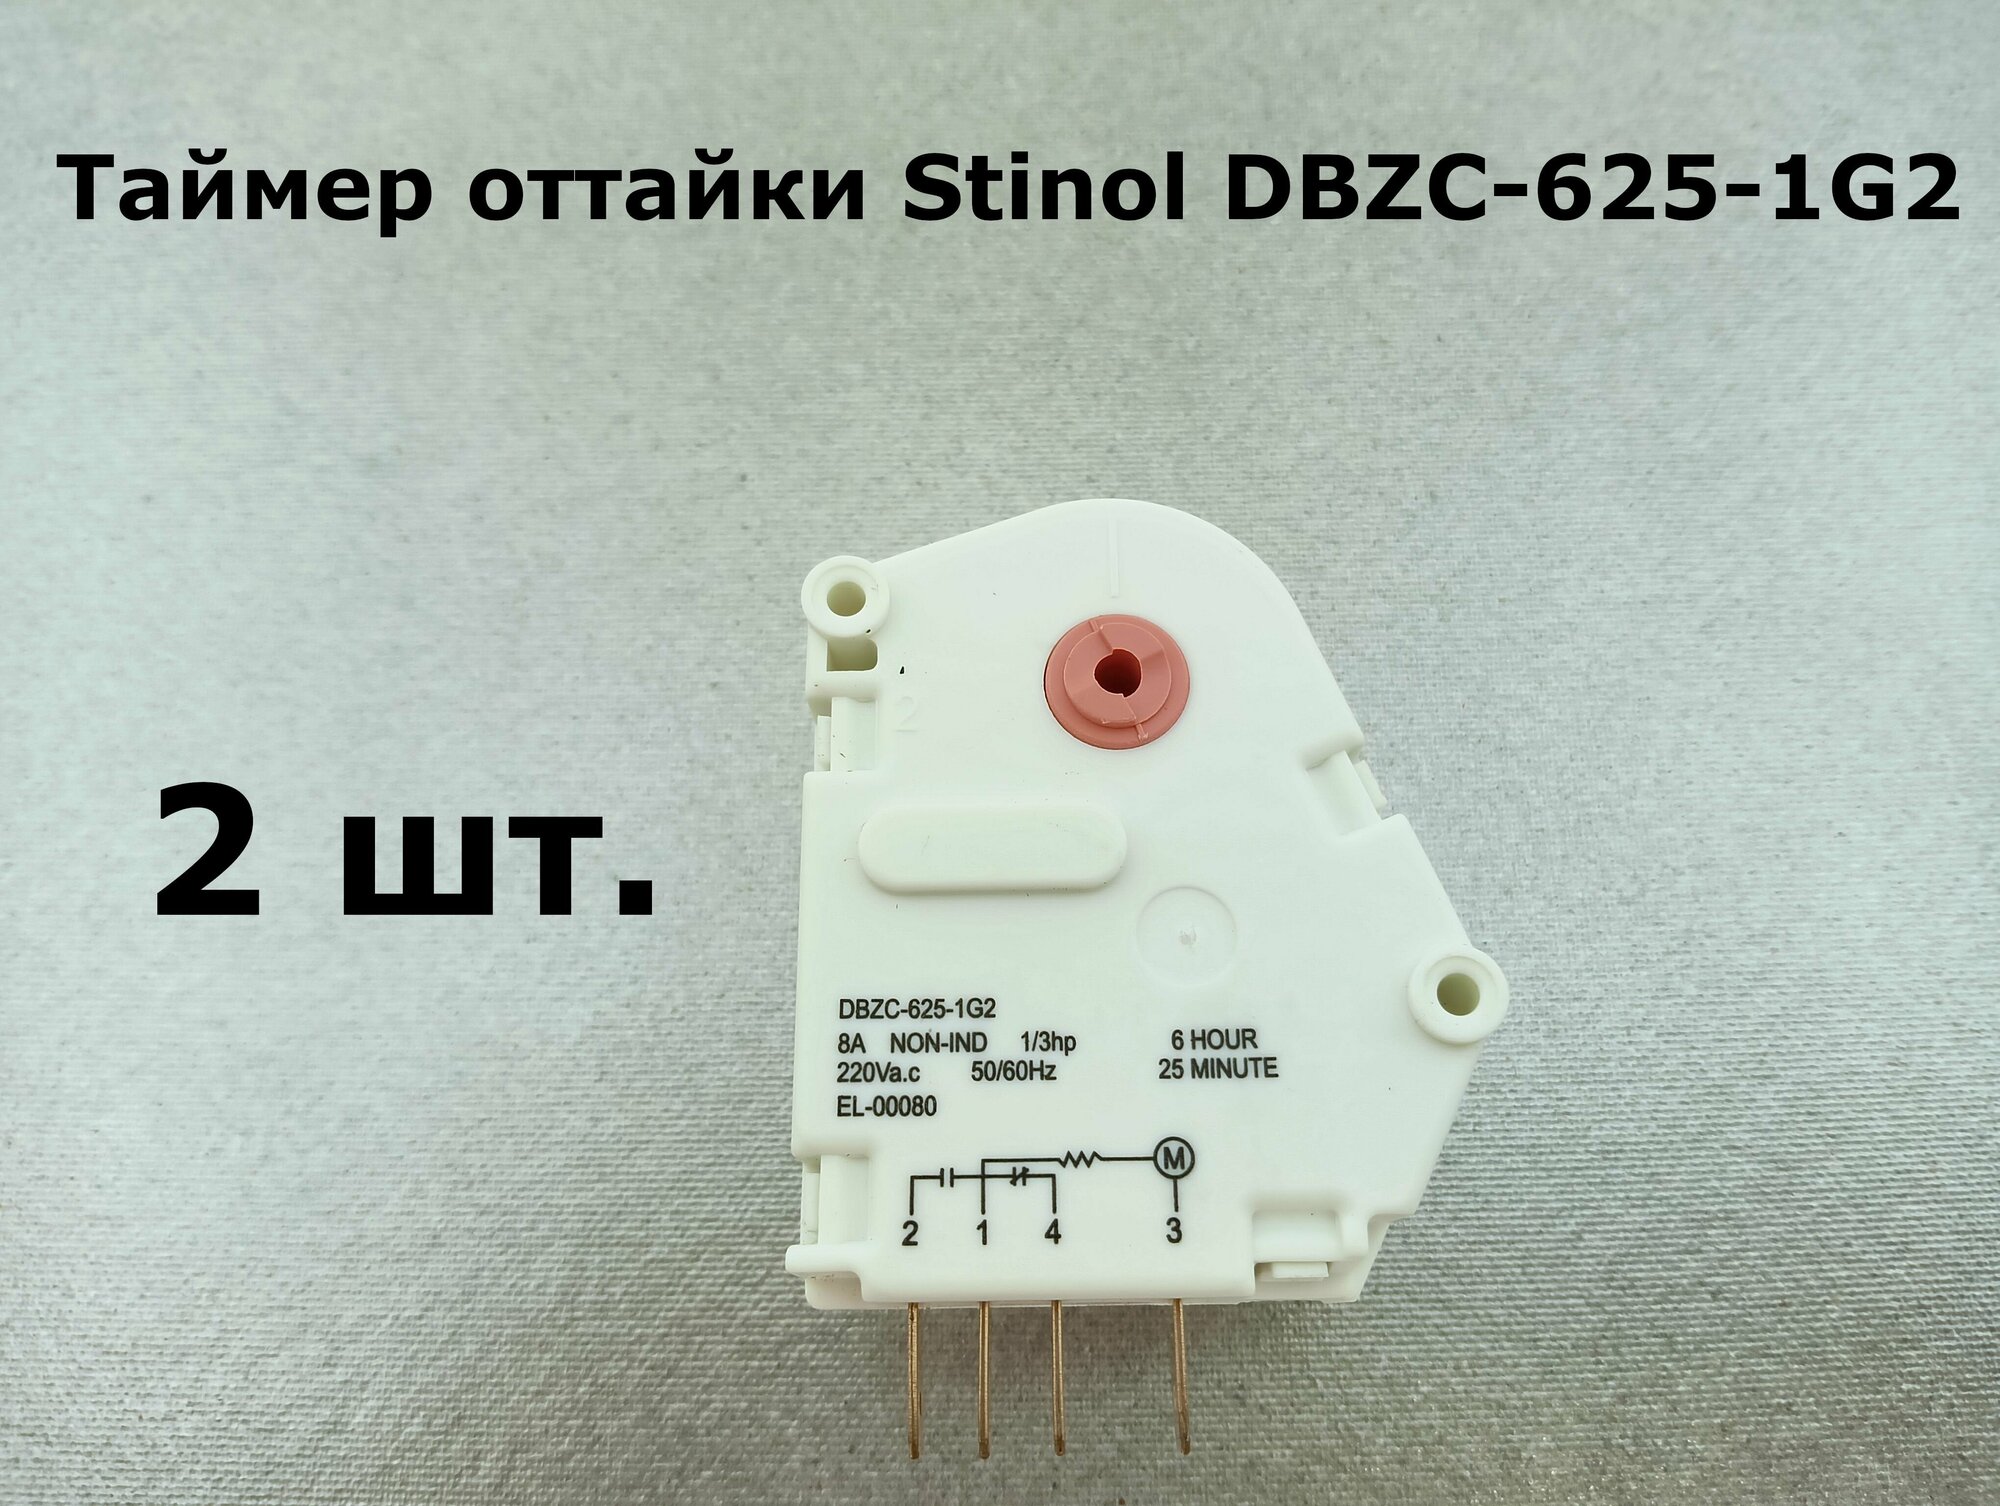 Таймер оттайки холодильника Indesit, Stinol DBZC-625-1G2 - 2 шт.